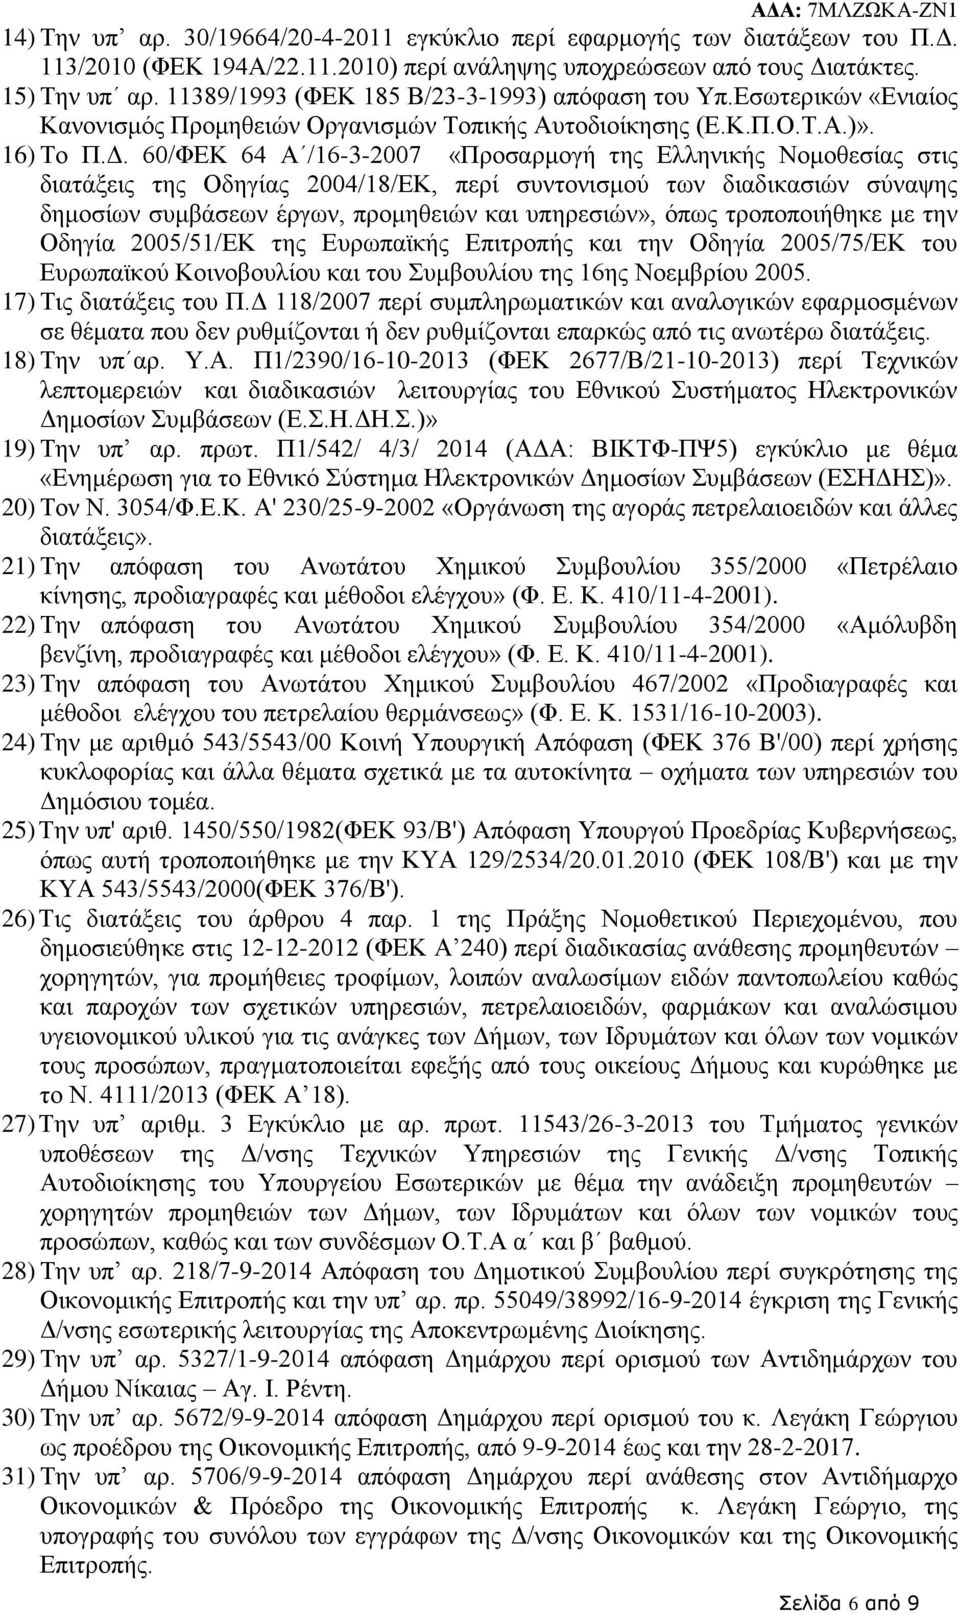 60/ΦΕΚ 64 Α /16-3-2007 «Προσαρμογή της Ελληνικής Νομοθεσίας στις διατάξεις της Οδηγίας 2004/18/ΕΚ, περί συντονισμού των διαδικασιών σύναψης δημοσίων συμβάσεων έργων, προμηθειών και υπηρεσιών», όπως